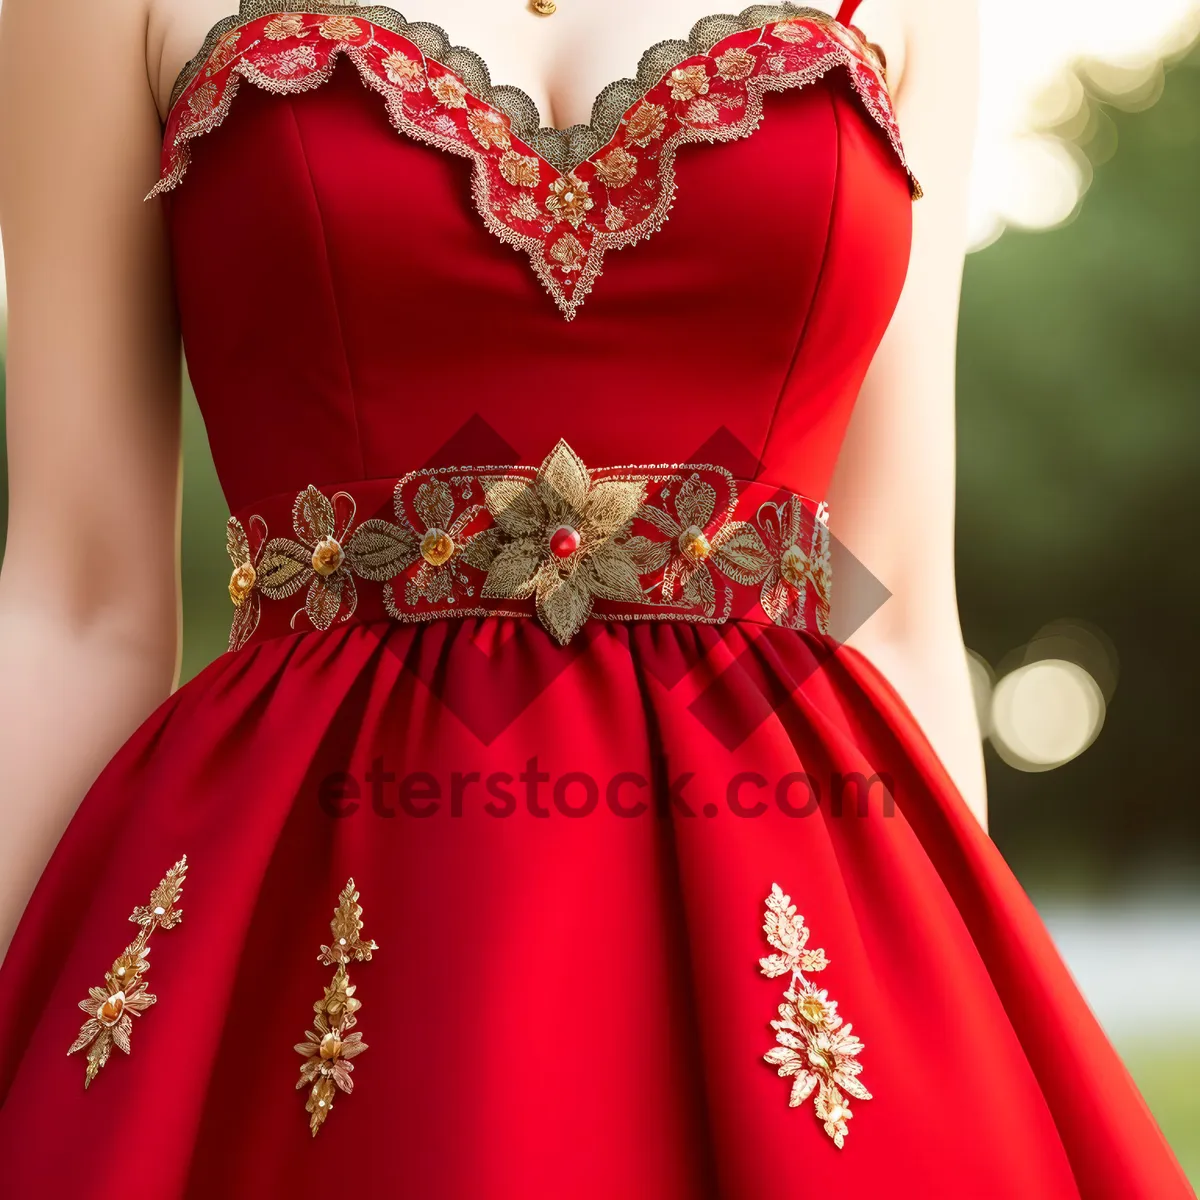 Picture of Stunning Brunette Model in Elegant Satin Dress